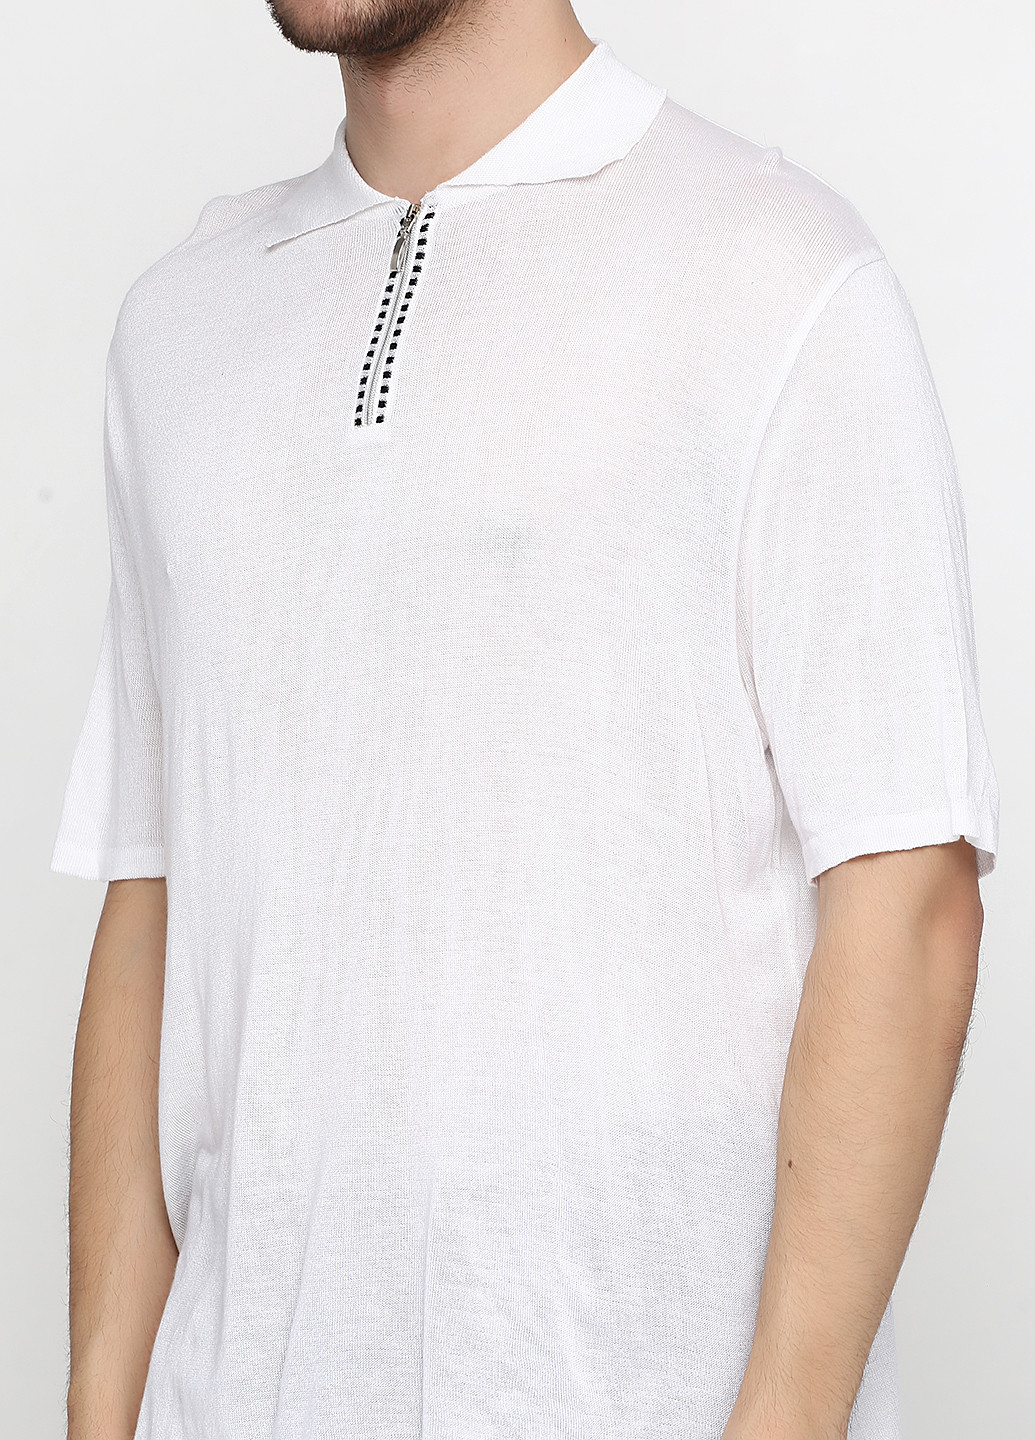 Белая футболка-поло для мужчин Flash однотонная